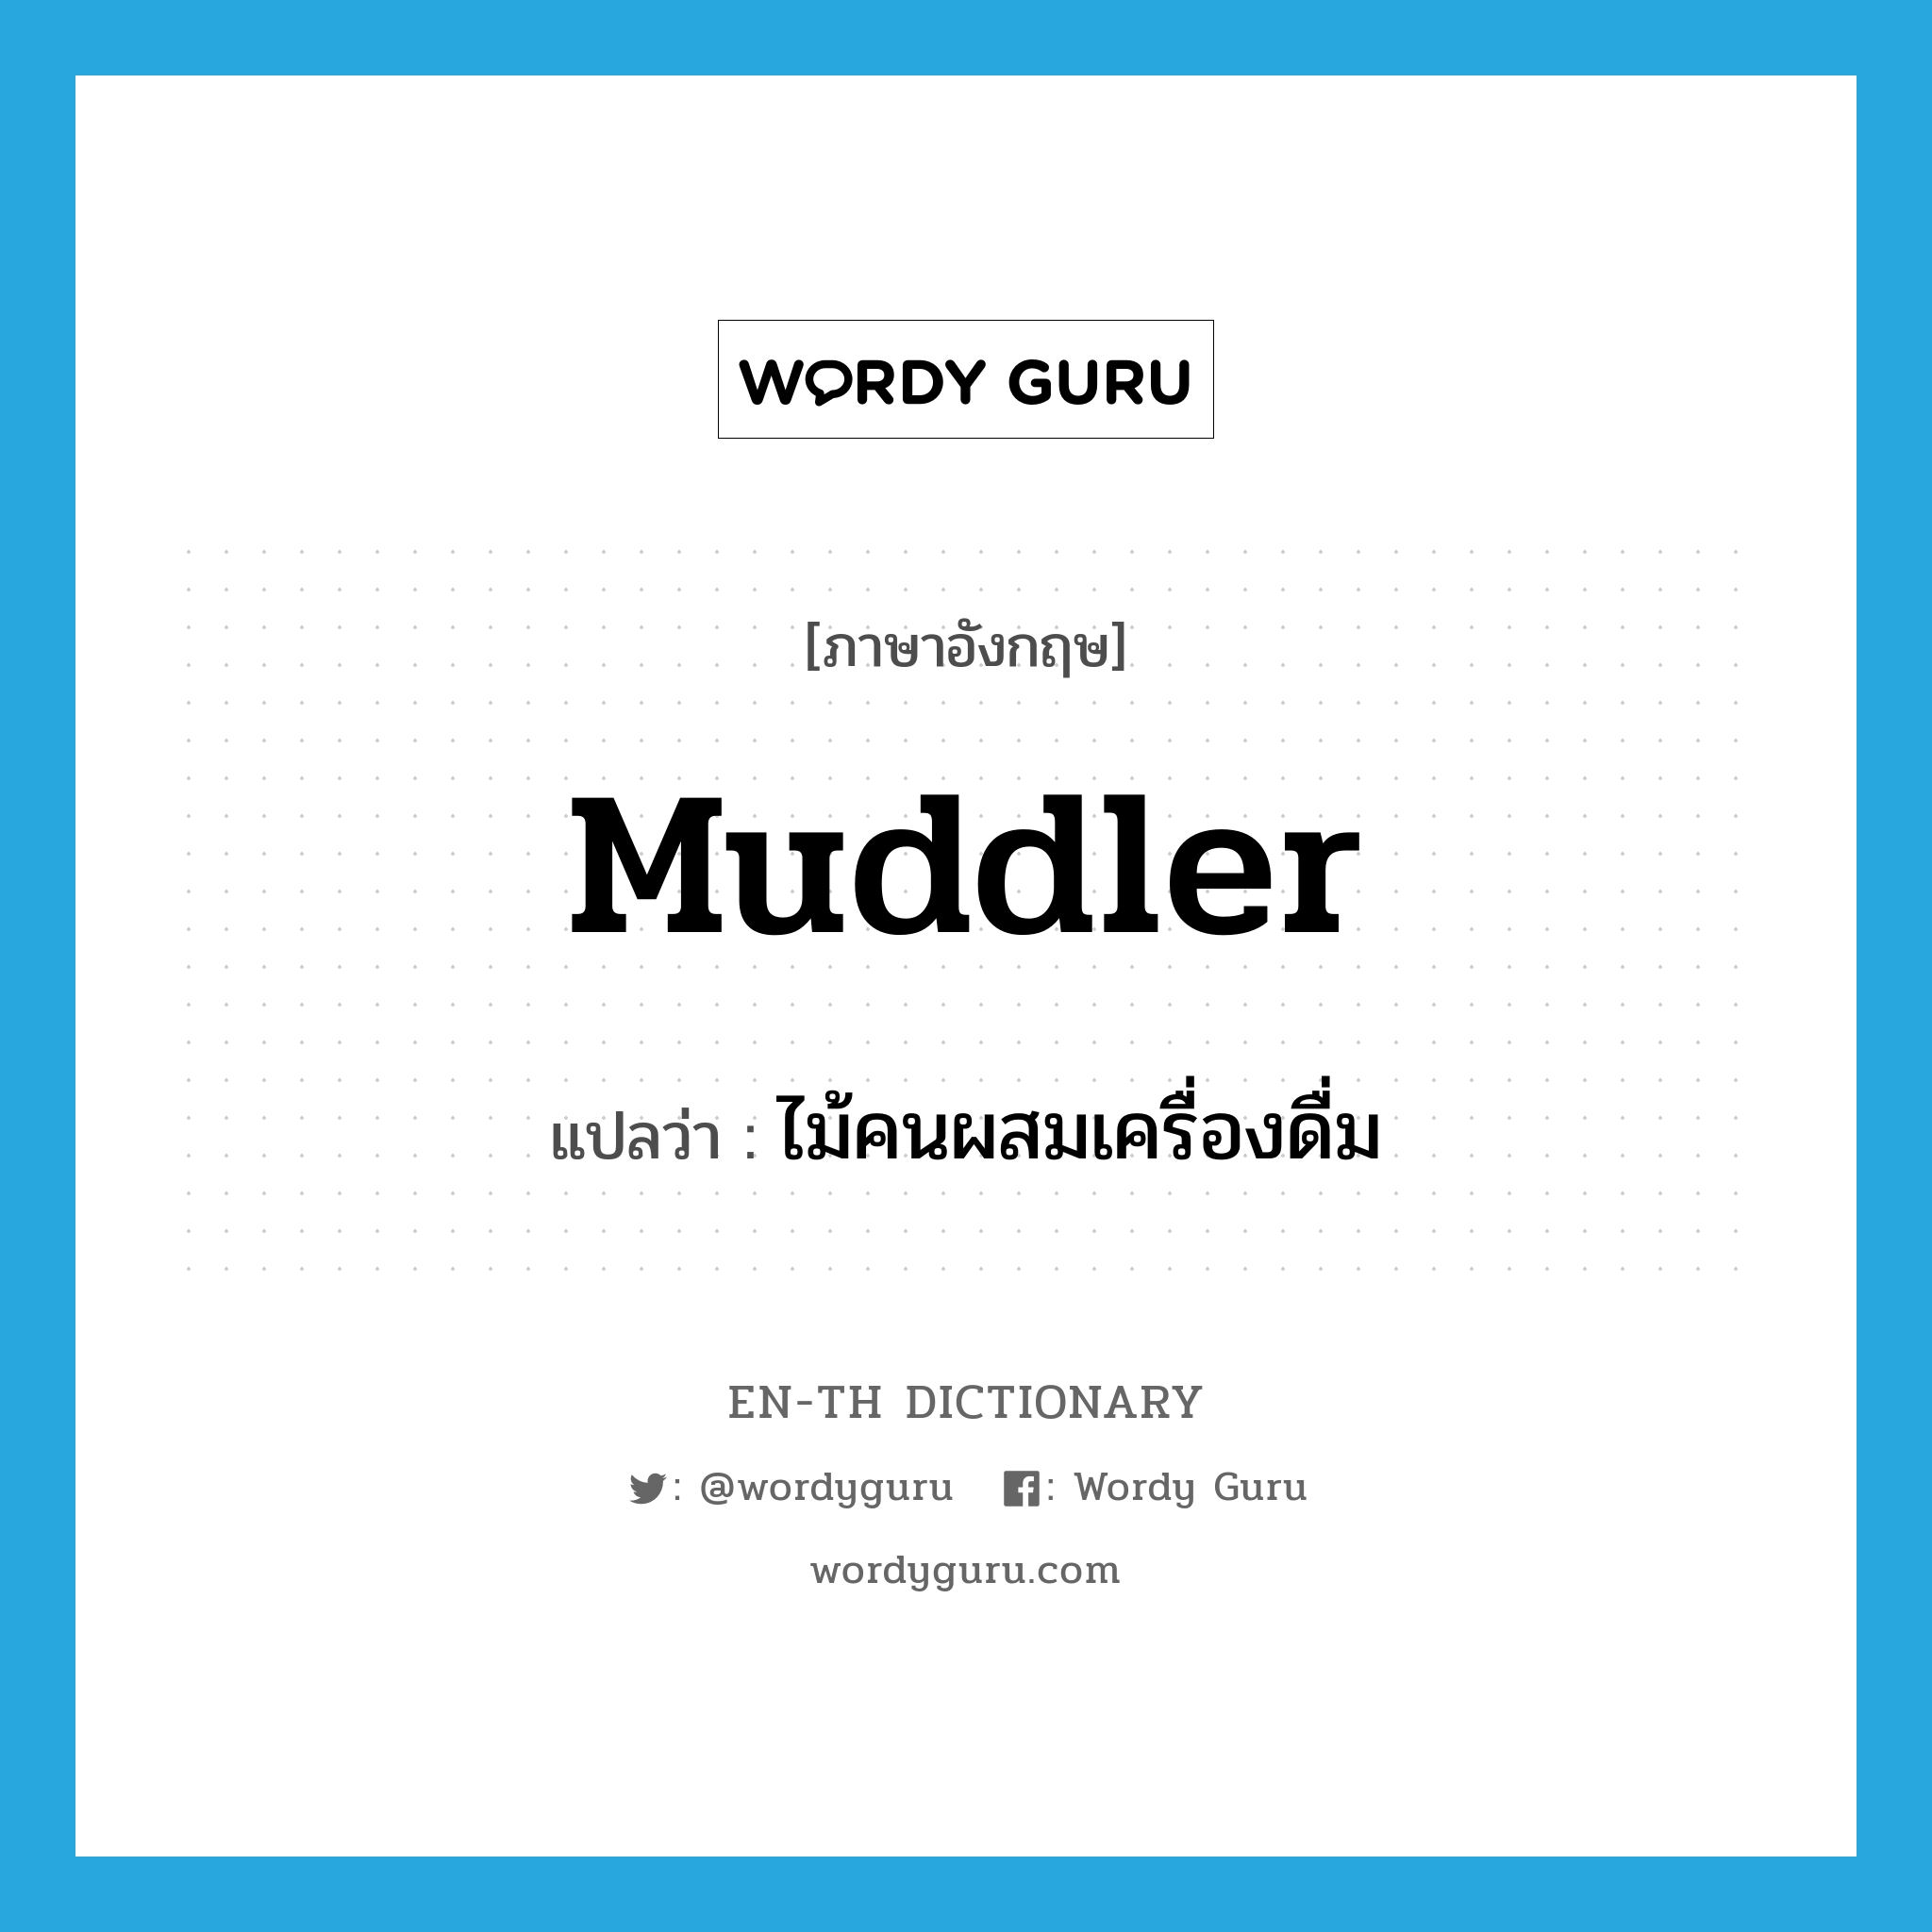 muddler แปลว่า?, คำศัพท์ภาษาอังกฤษ muddler แปลว่า ไม้คนผสมเครื่องดื่ม ประเภท N หมวด N